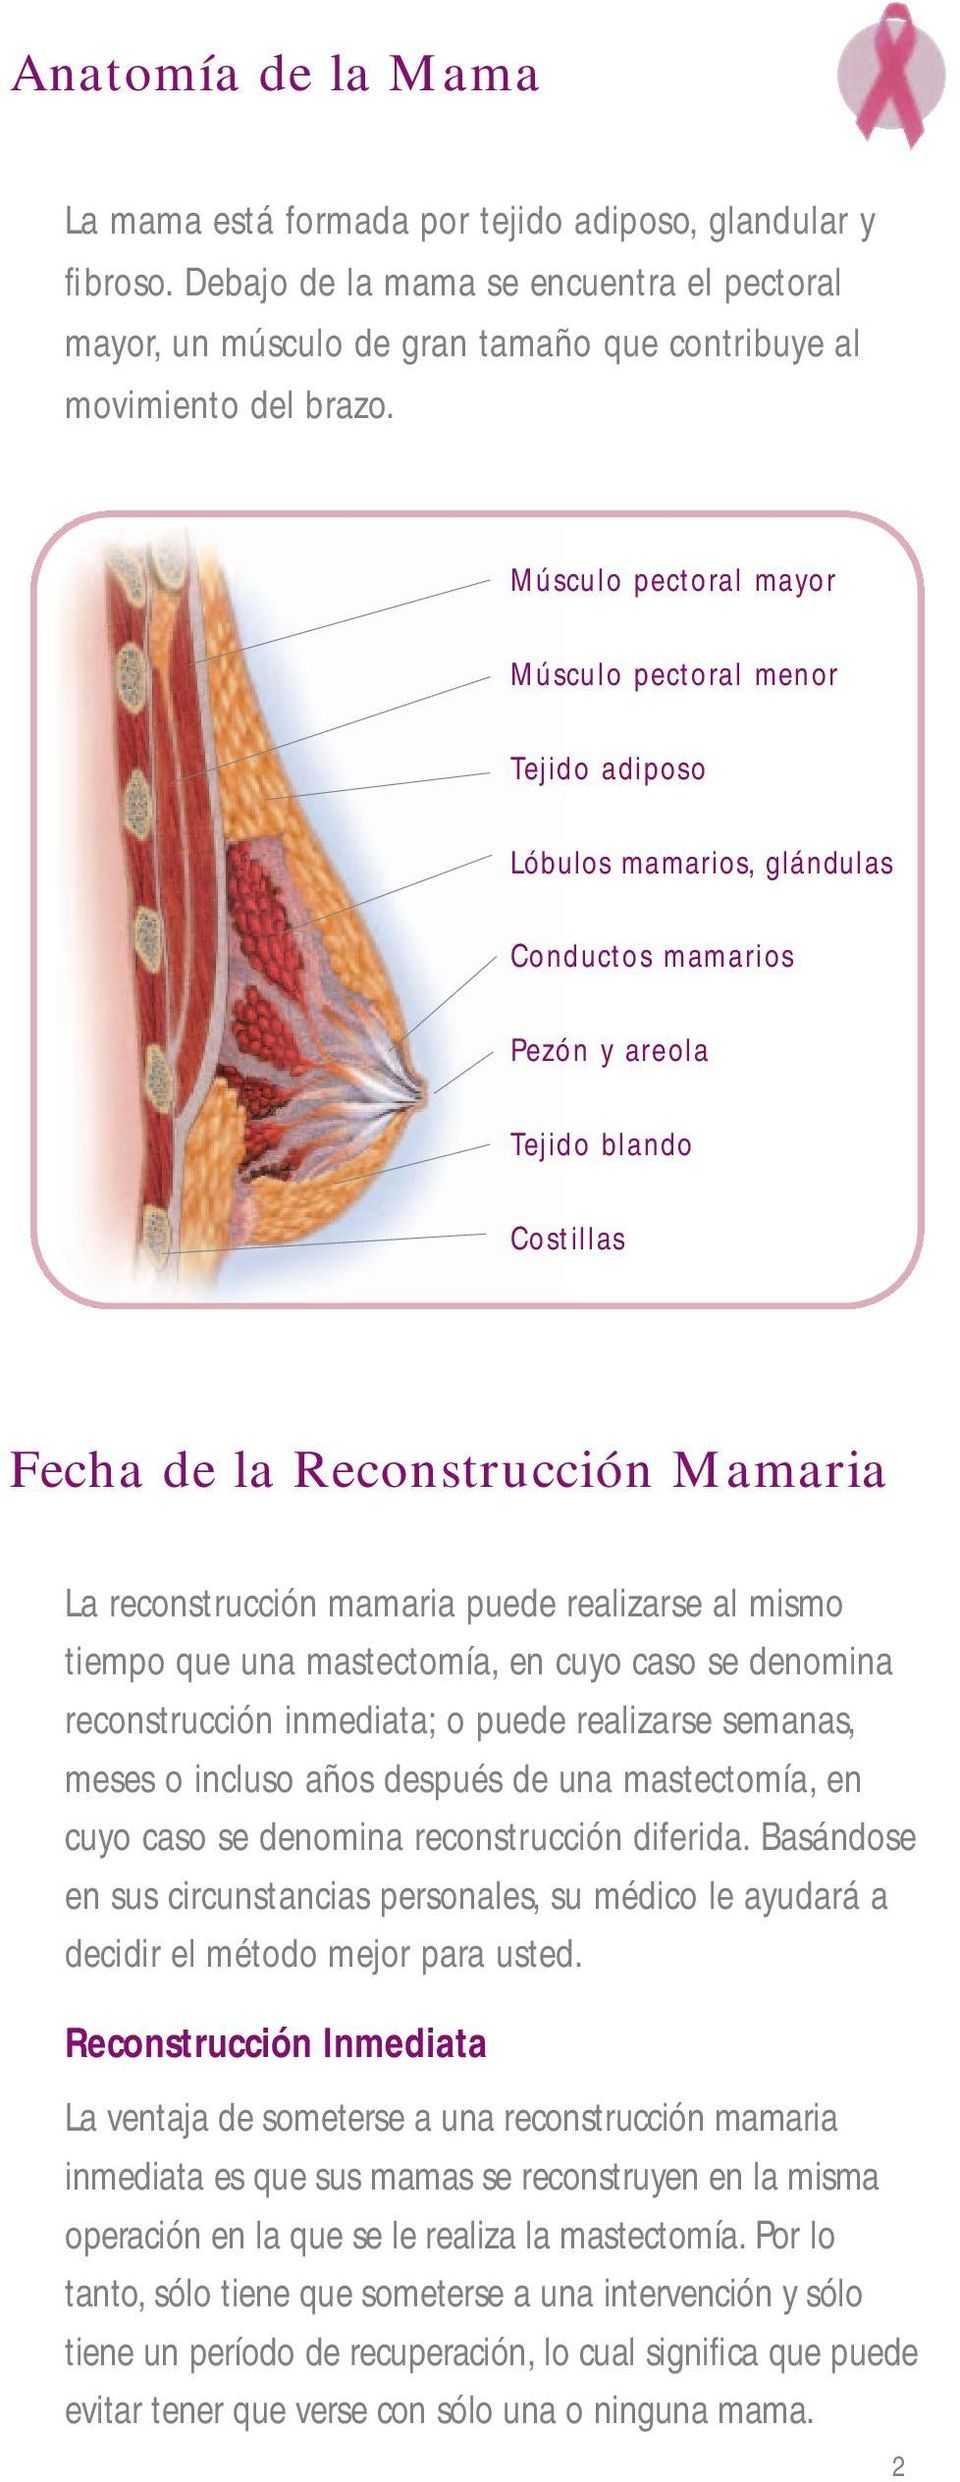 mamaria puede realizarse al mismo tiempo que una mastectomía, en cuyo caso se denomina reconstrucción inmediata; o puede realizarse semanas, meses o incluso años después de una mastectomía, en cuyo